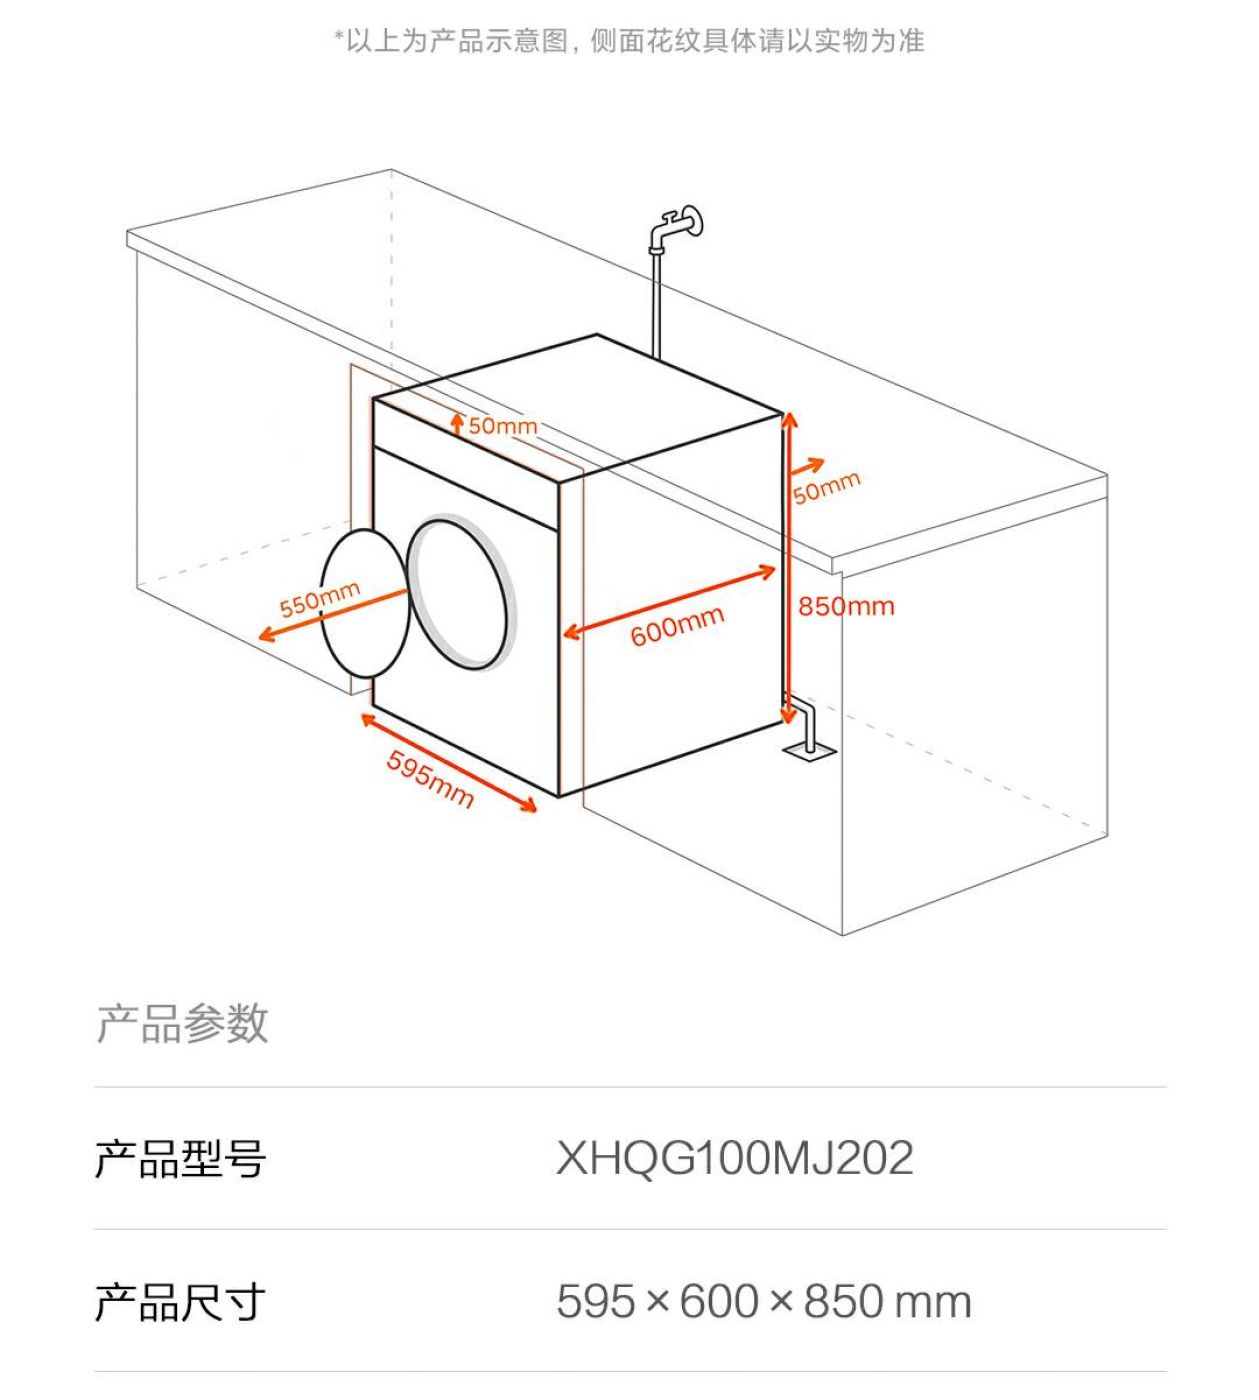 Máy giặt Xiaomi Mijia giặt 10kg, sấy 7kg - XHQG100MJ202